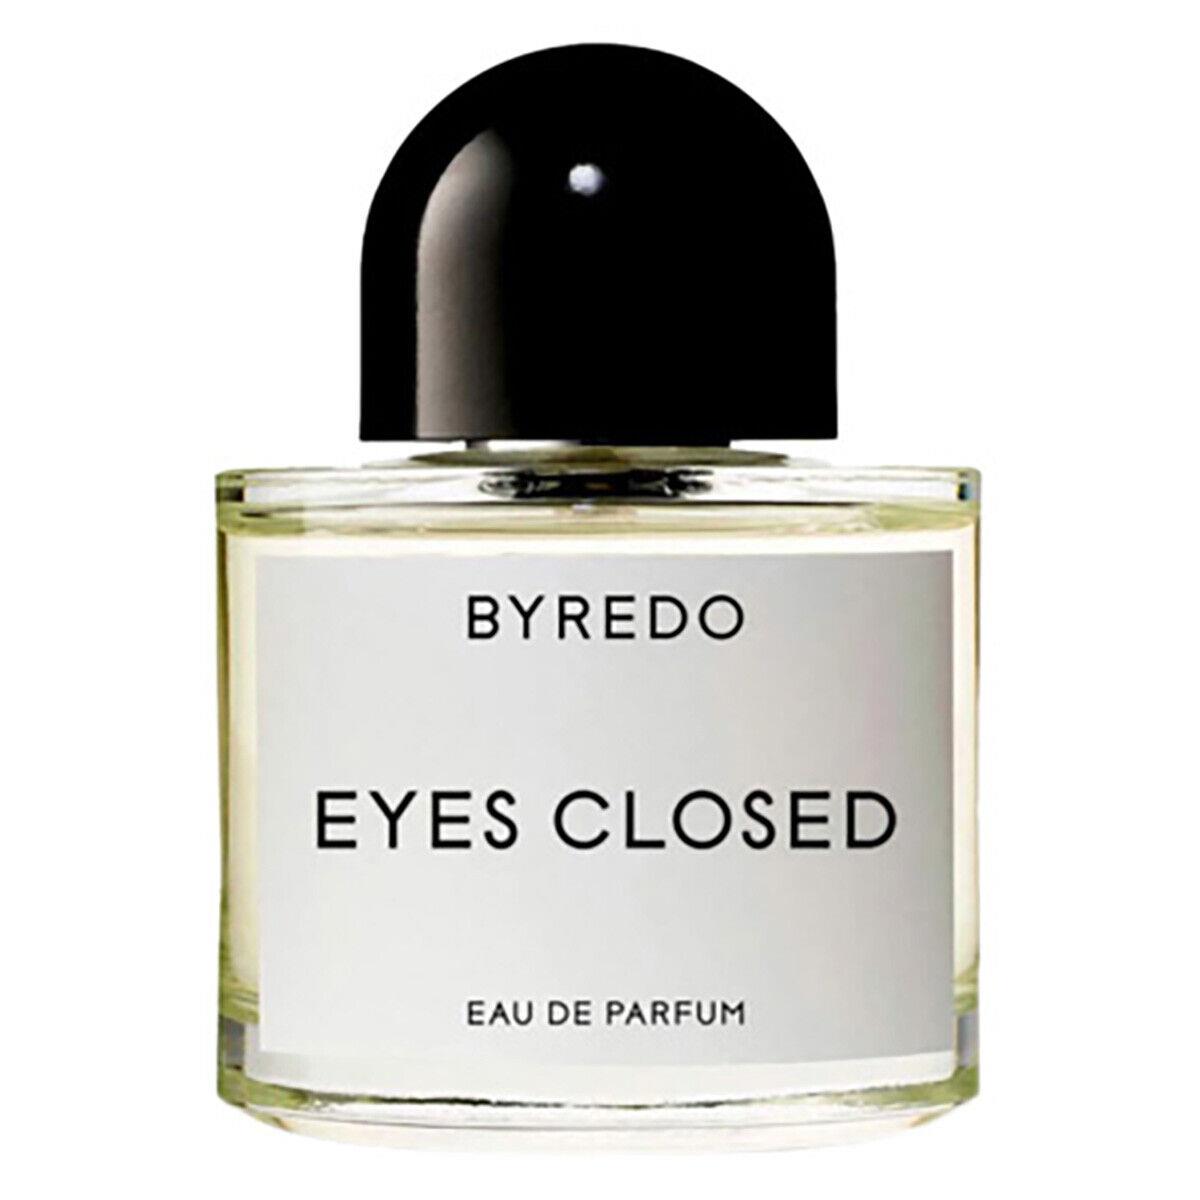 Byredo Unisex Eyes Closed Edp Spray 1.7 oz Fragrances 7340032862614